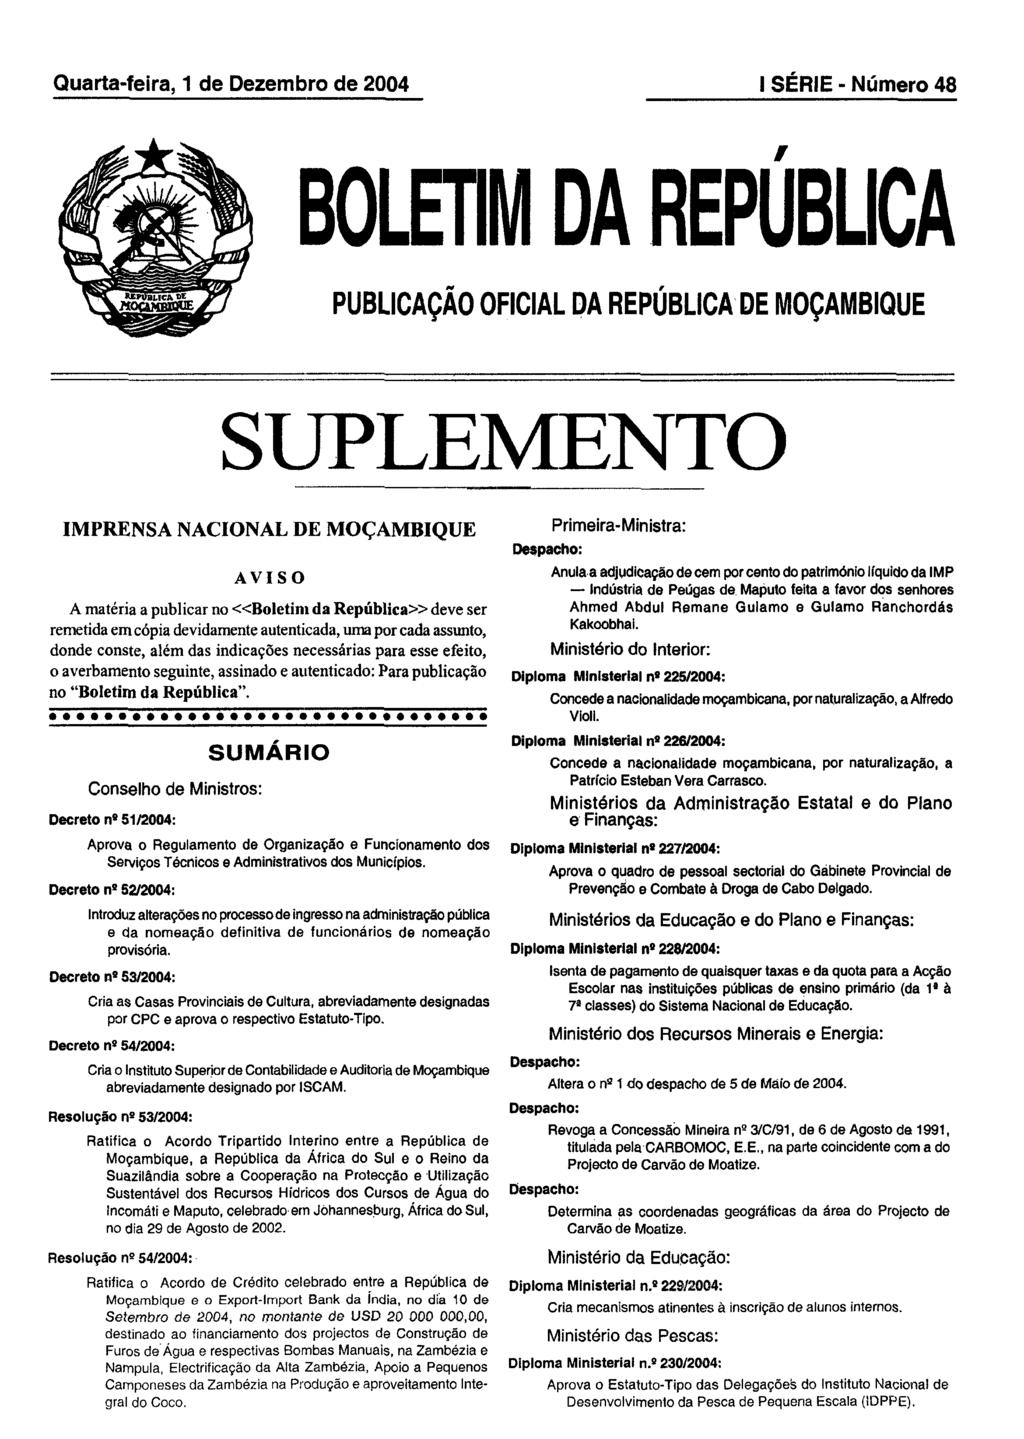 Quarta-feíra, 1 de Dezembro de 2004 I SÉRIE - Número 48 BOLETIM DA REPUBLICA PUBLICAÇÃO OFICIAL DA REPÚBLICA DE MOÇAMBIQUE SUPLEMENTO IMPRENSA NACIONAL DE MOÇAMBIQUE AVISO A matéria a publicar no